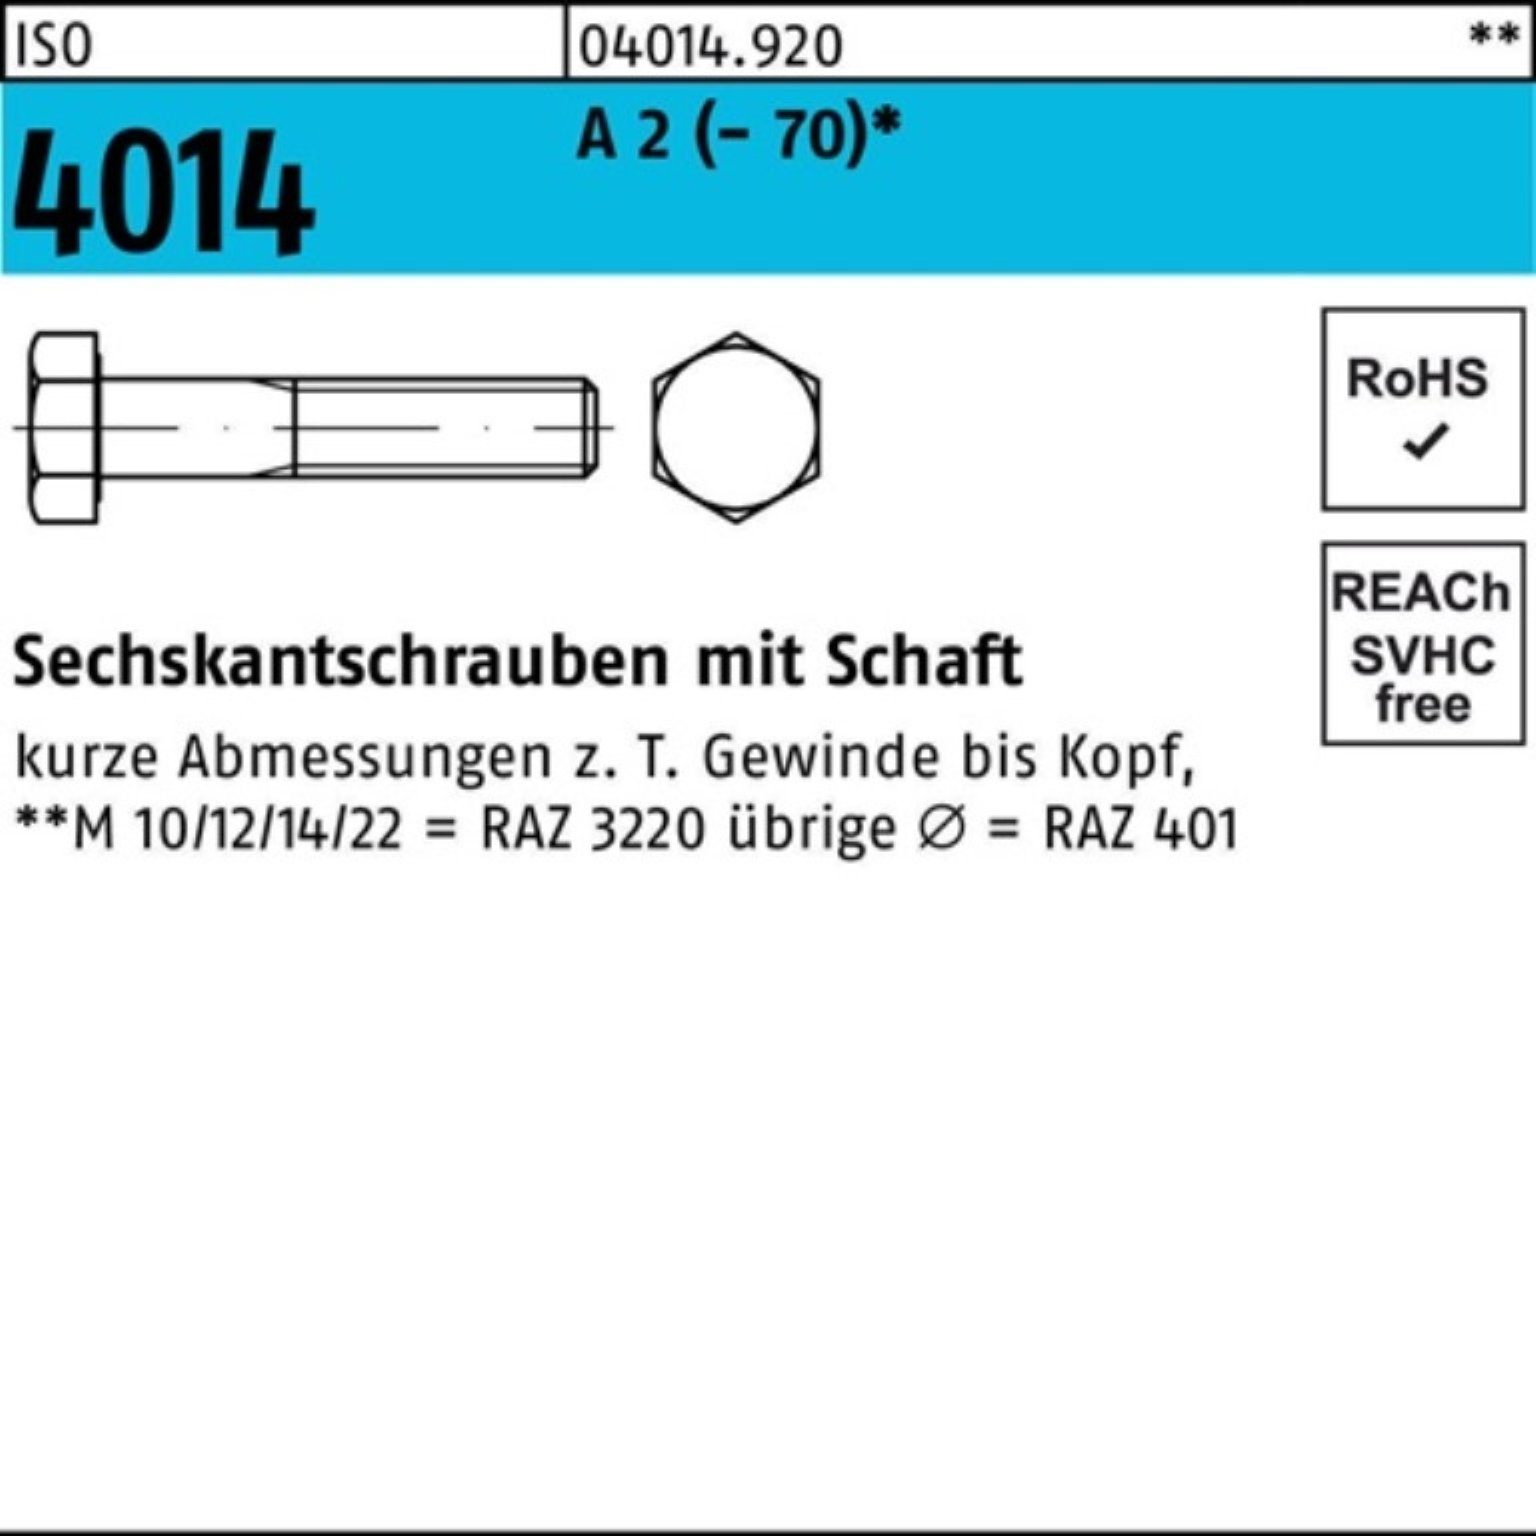 4014 ISO Sechskantschraube 100er A Bufab Sechskantschraube 120 St Pack 10 M22x Schaft (70) 2